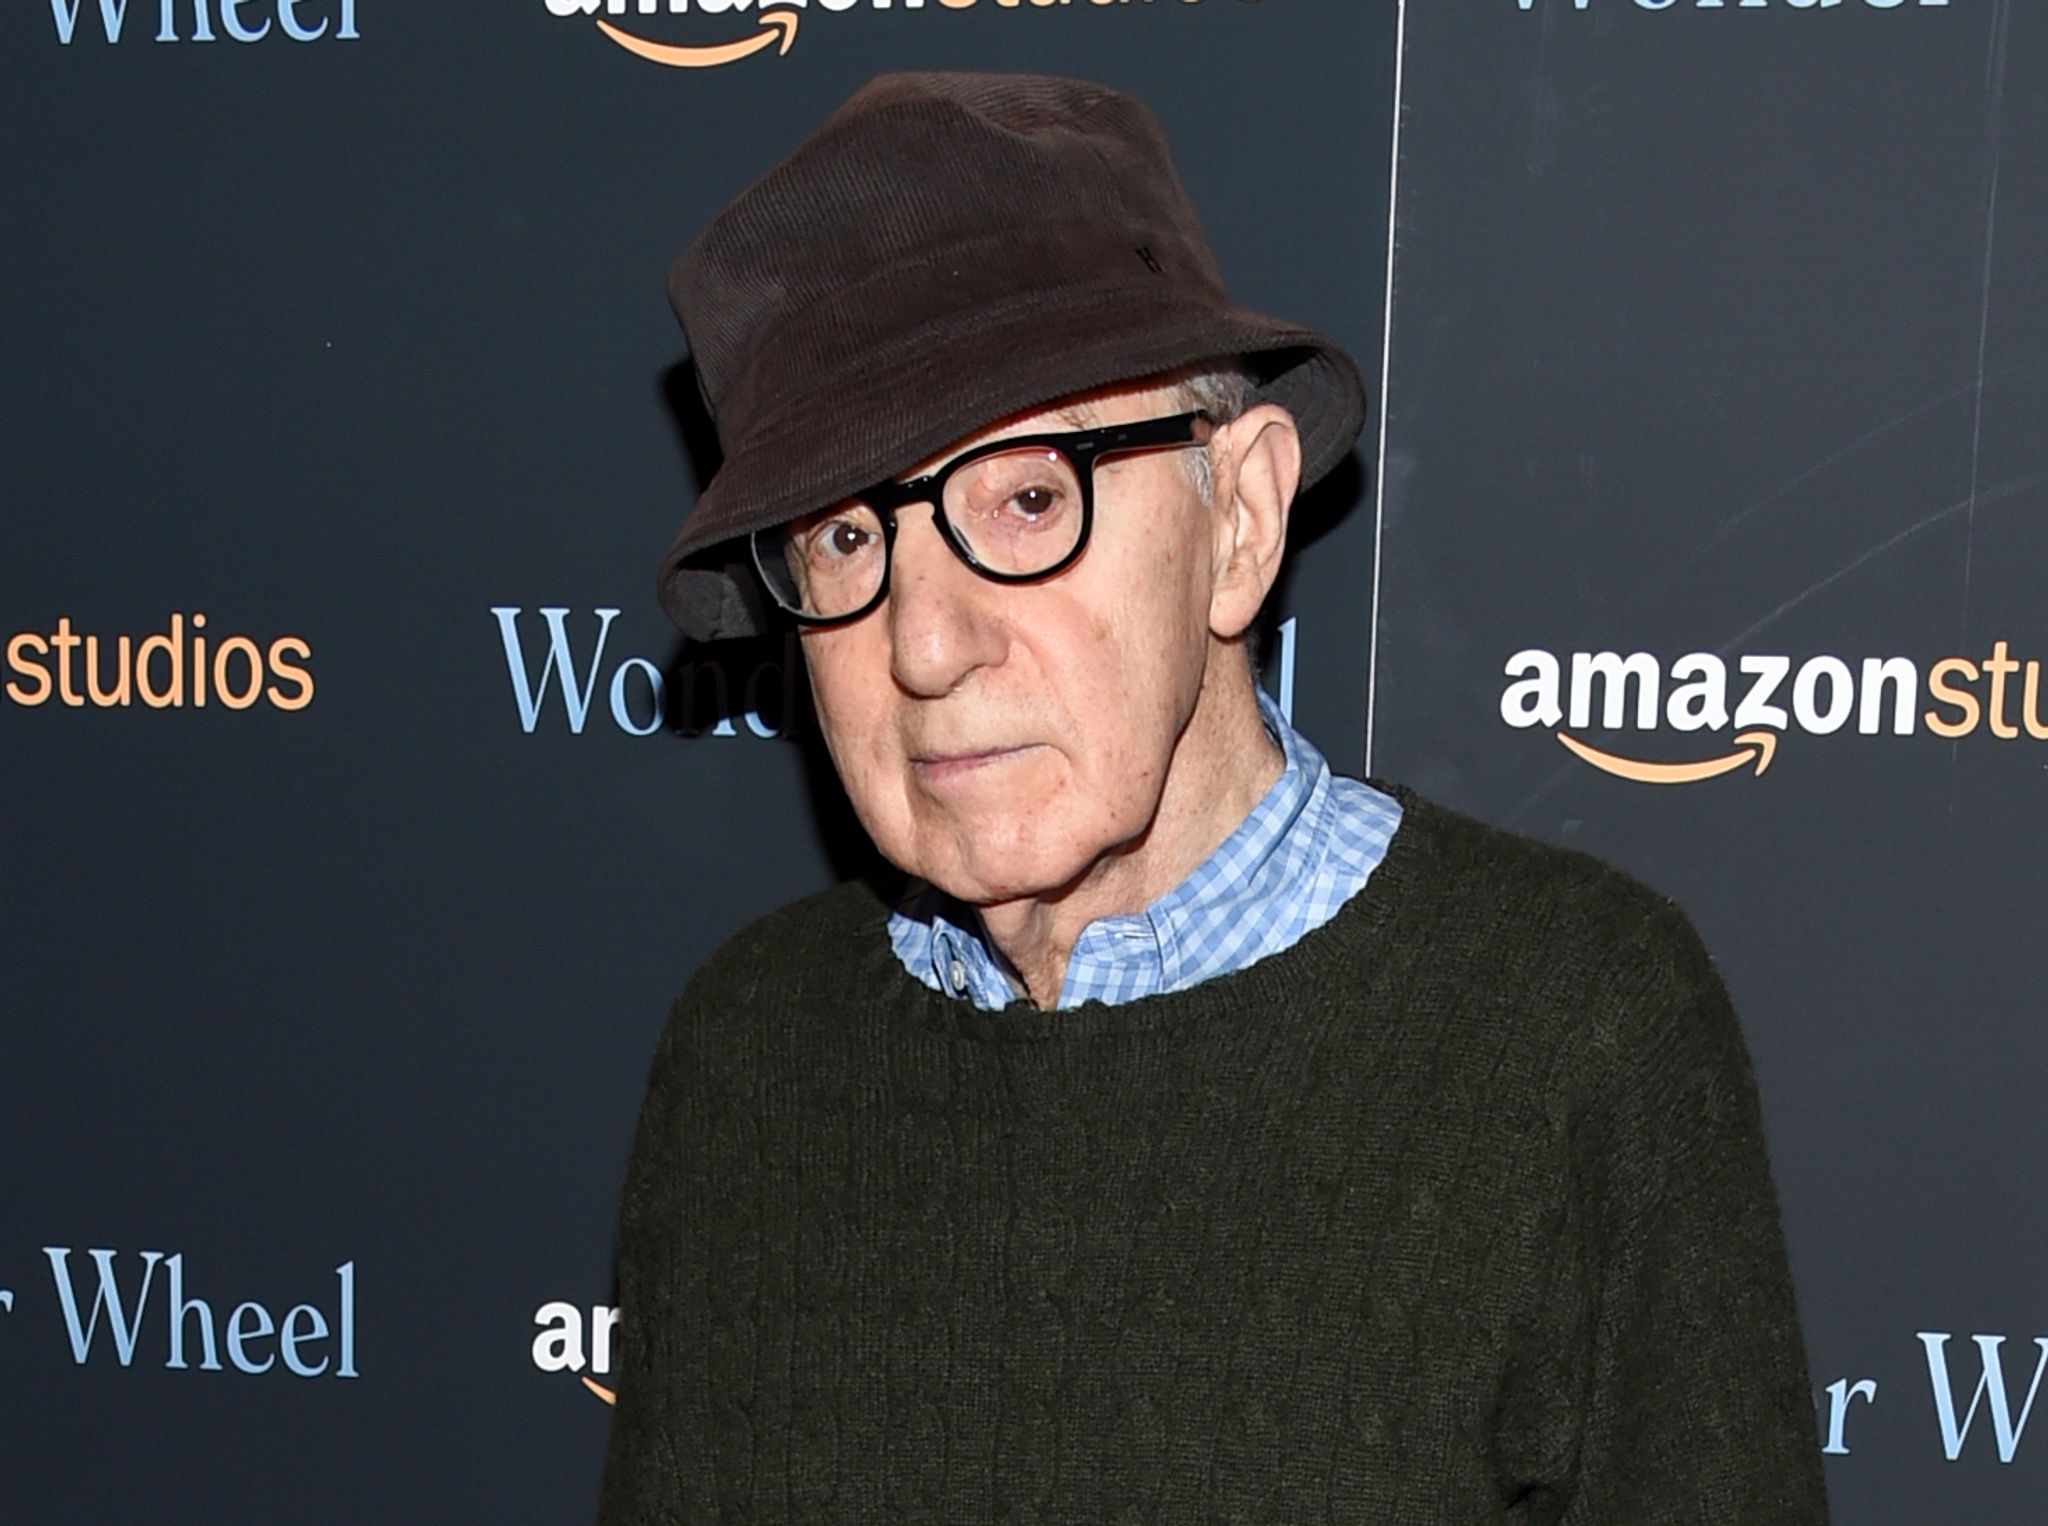 Zuletzt gab es Spekulationen über ein mögliches Karriereende von Woody Allen. (© Evan Agostini/Invision/AP/dpa/Archiv)